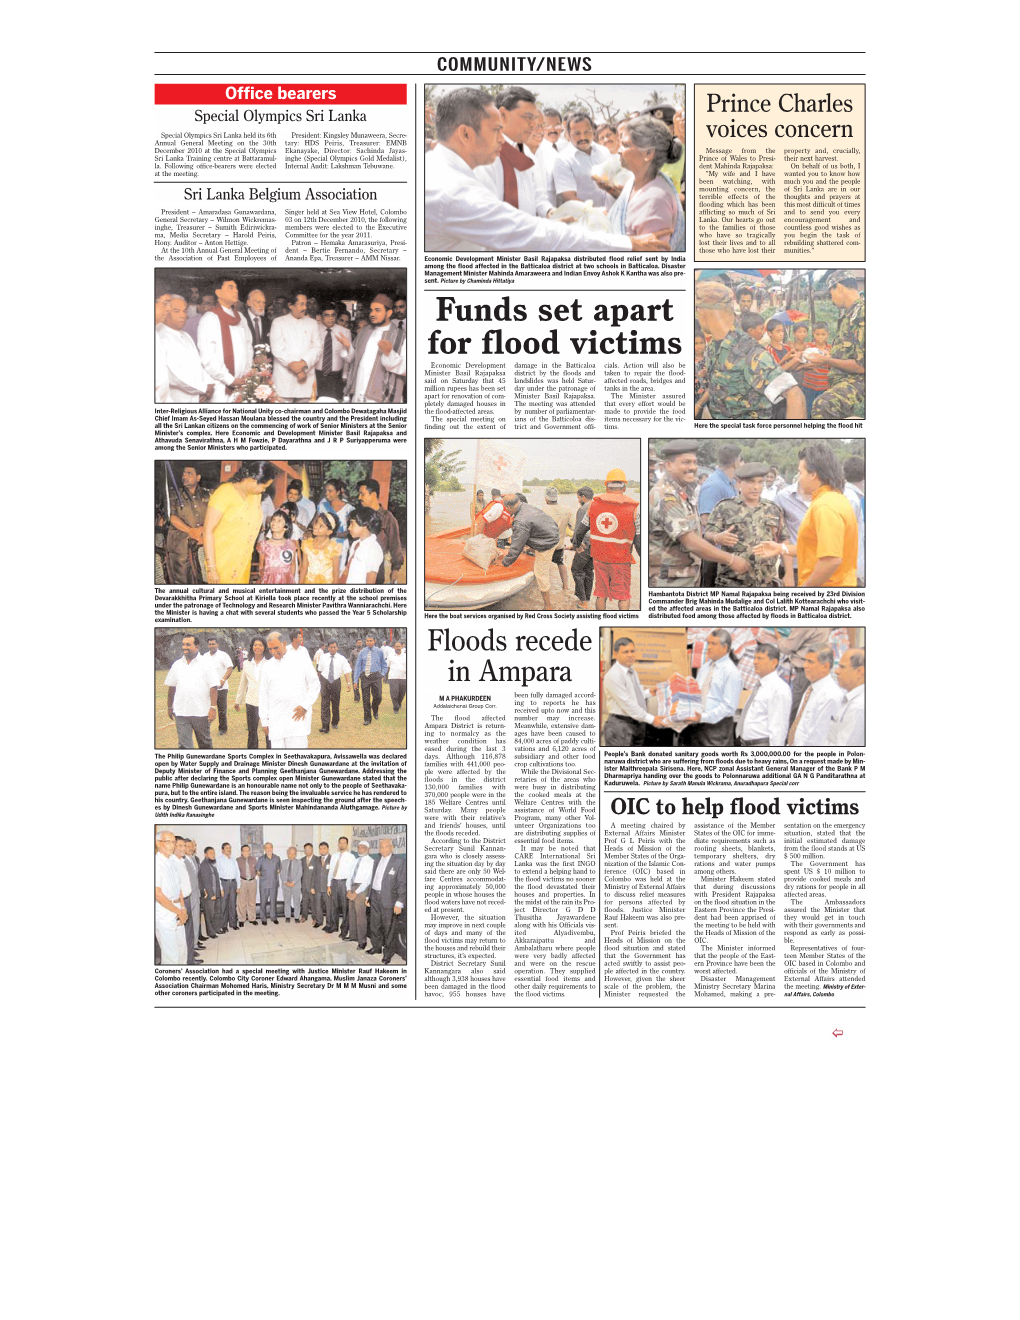 Funds Set Apart for Flood Victims Economic Development Damage in the Batticaloa Cials